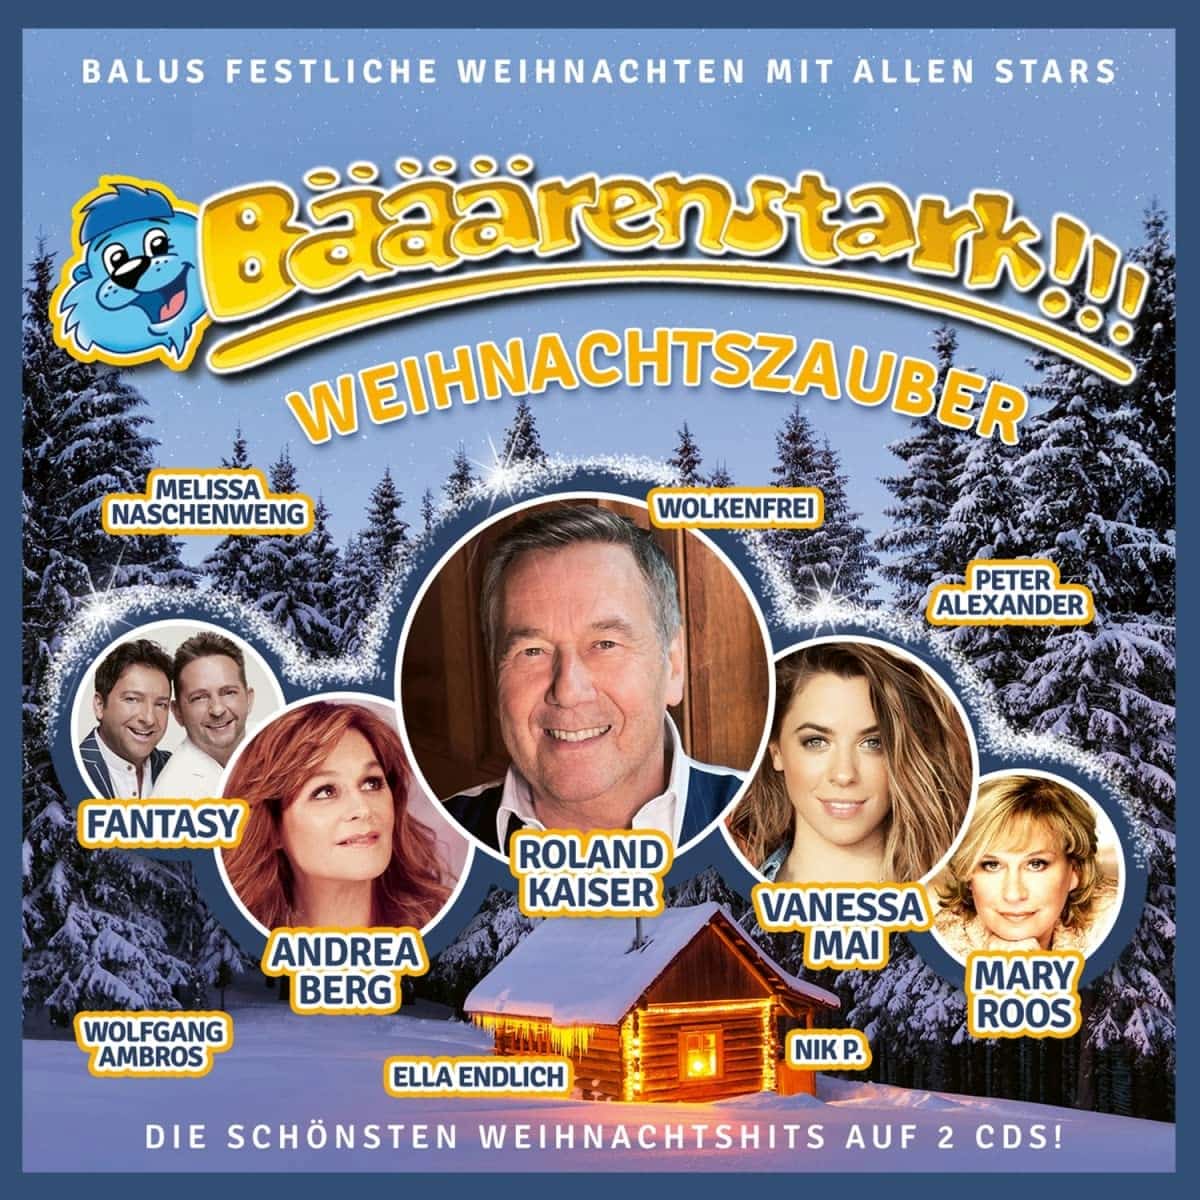 Weihnachts-Schlager-CD “Bääärenstark!!! Weihnachtszauber” 2022